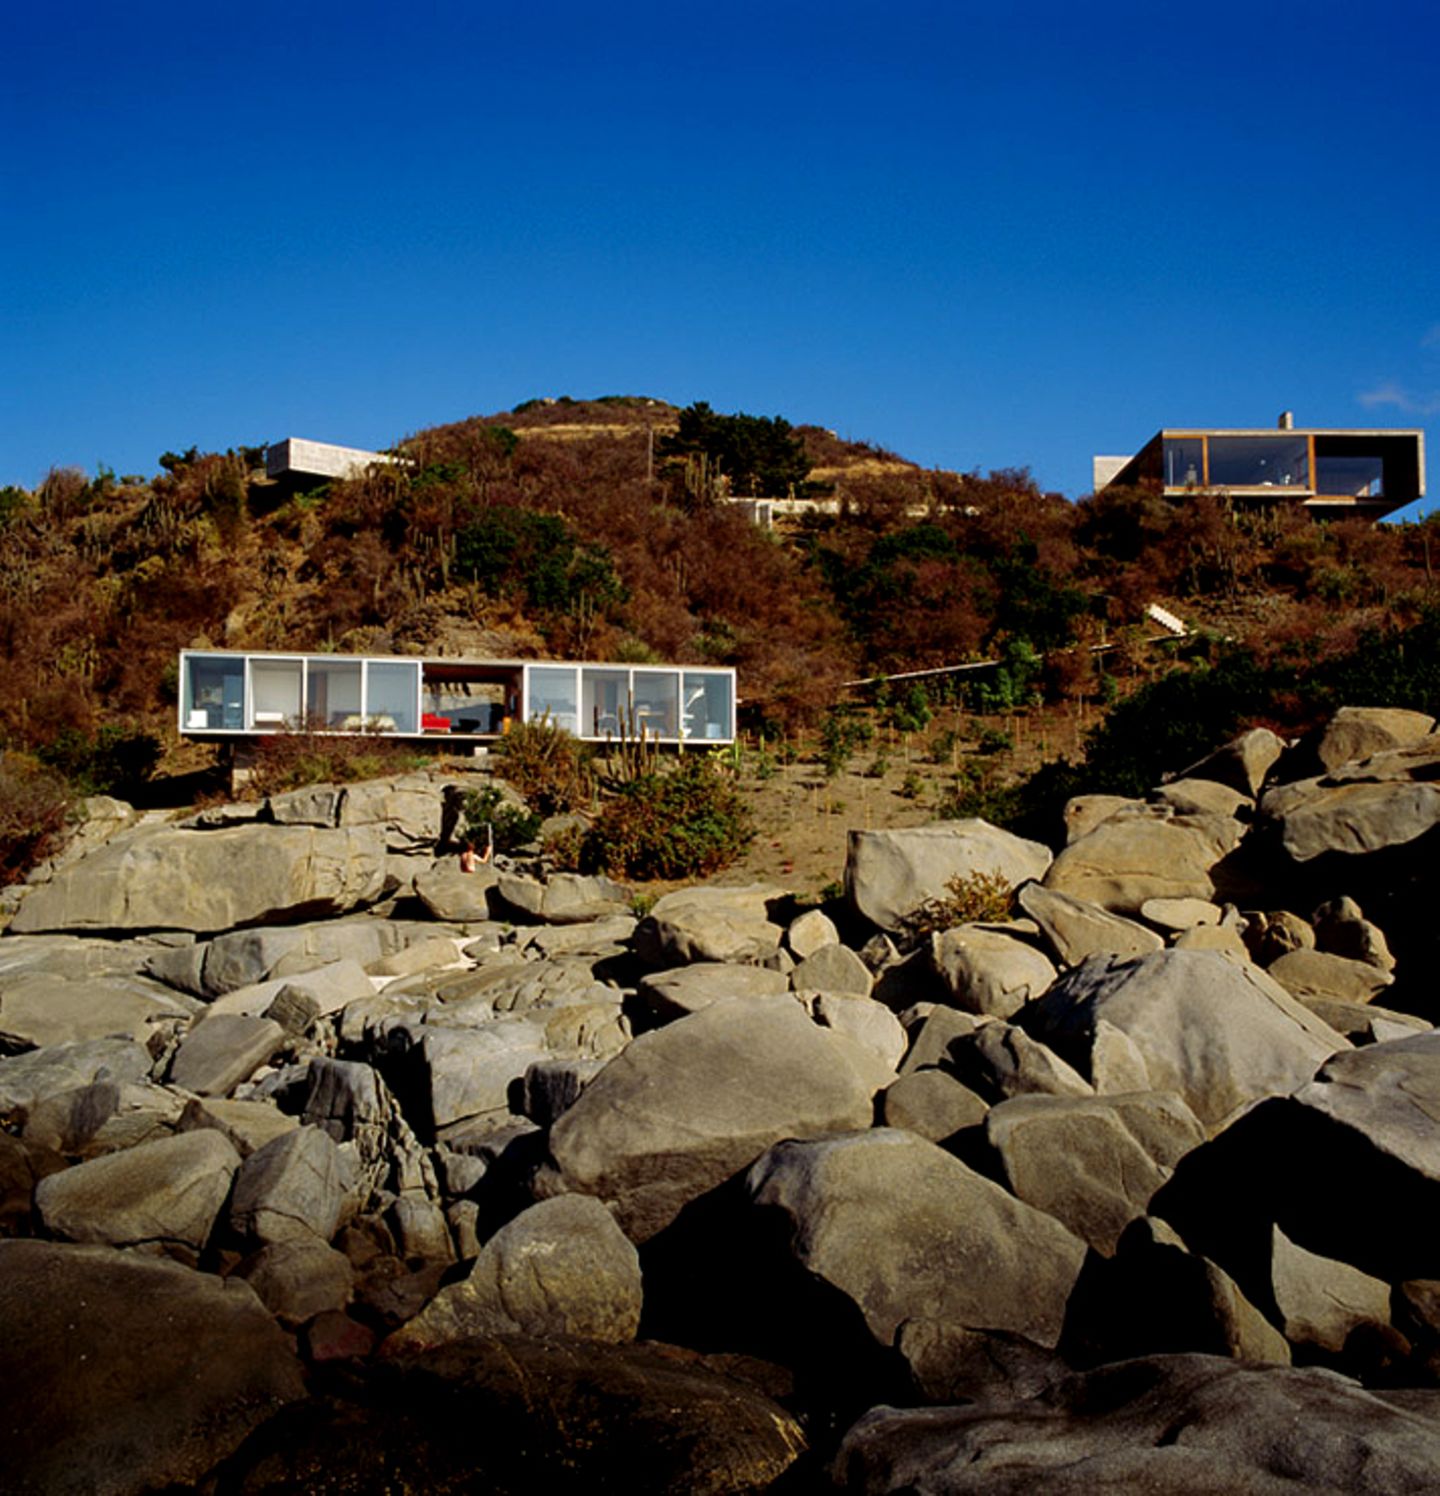 Ferienhaus mit Meeresblick am Hang